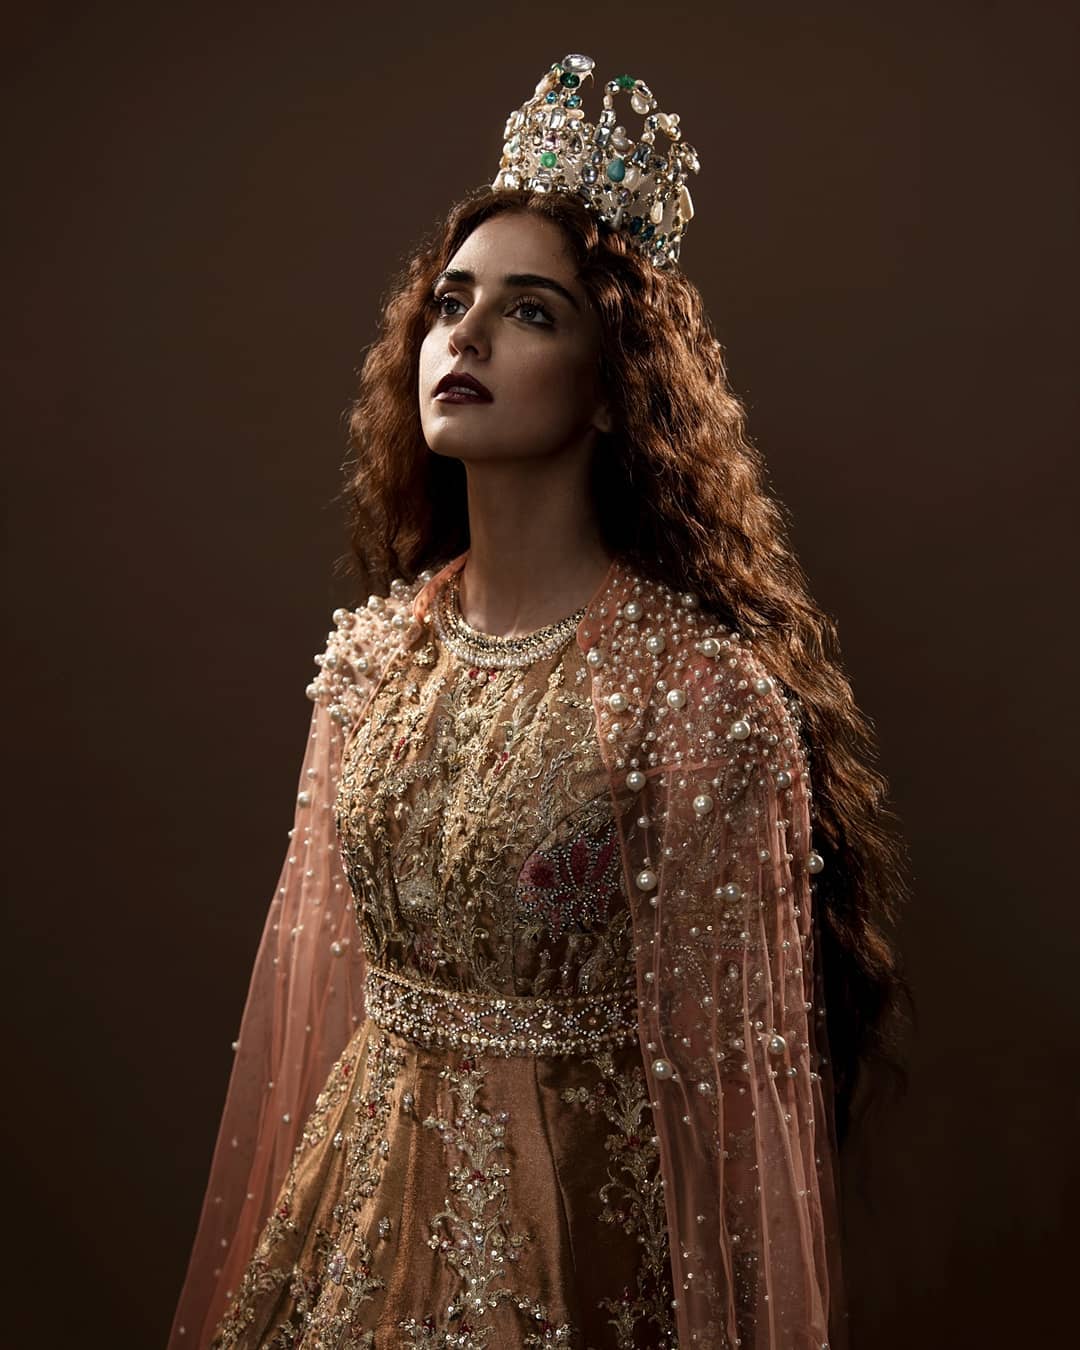 Maya Ali is Looking Stunning in Bridal Shoot for Ali Xeeshan